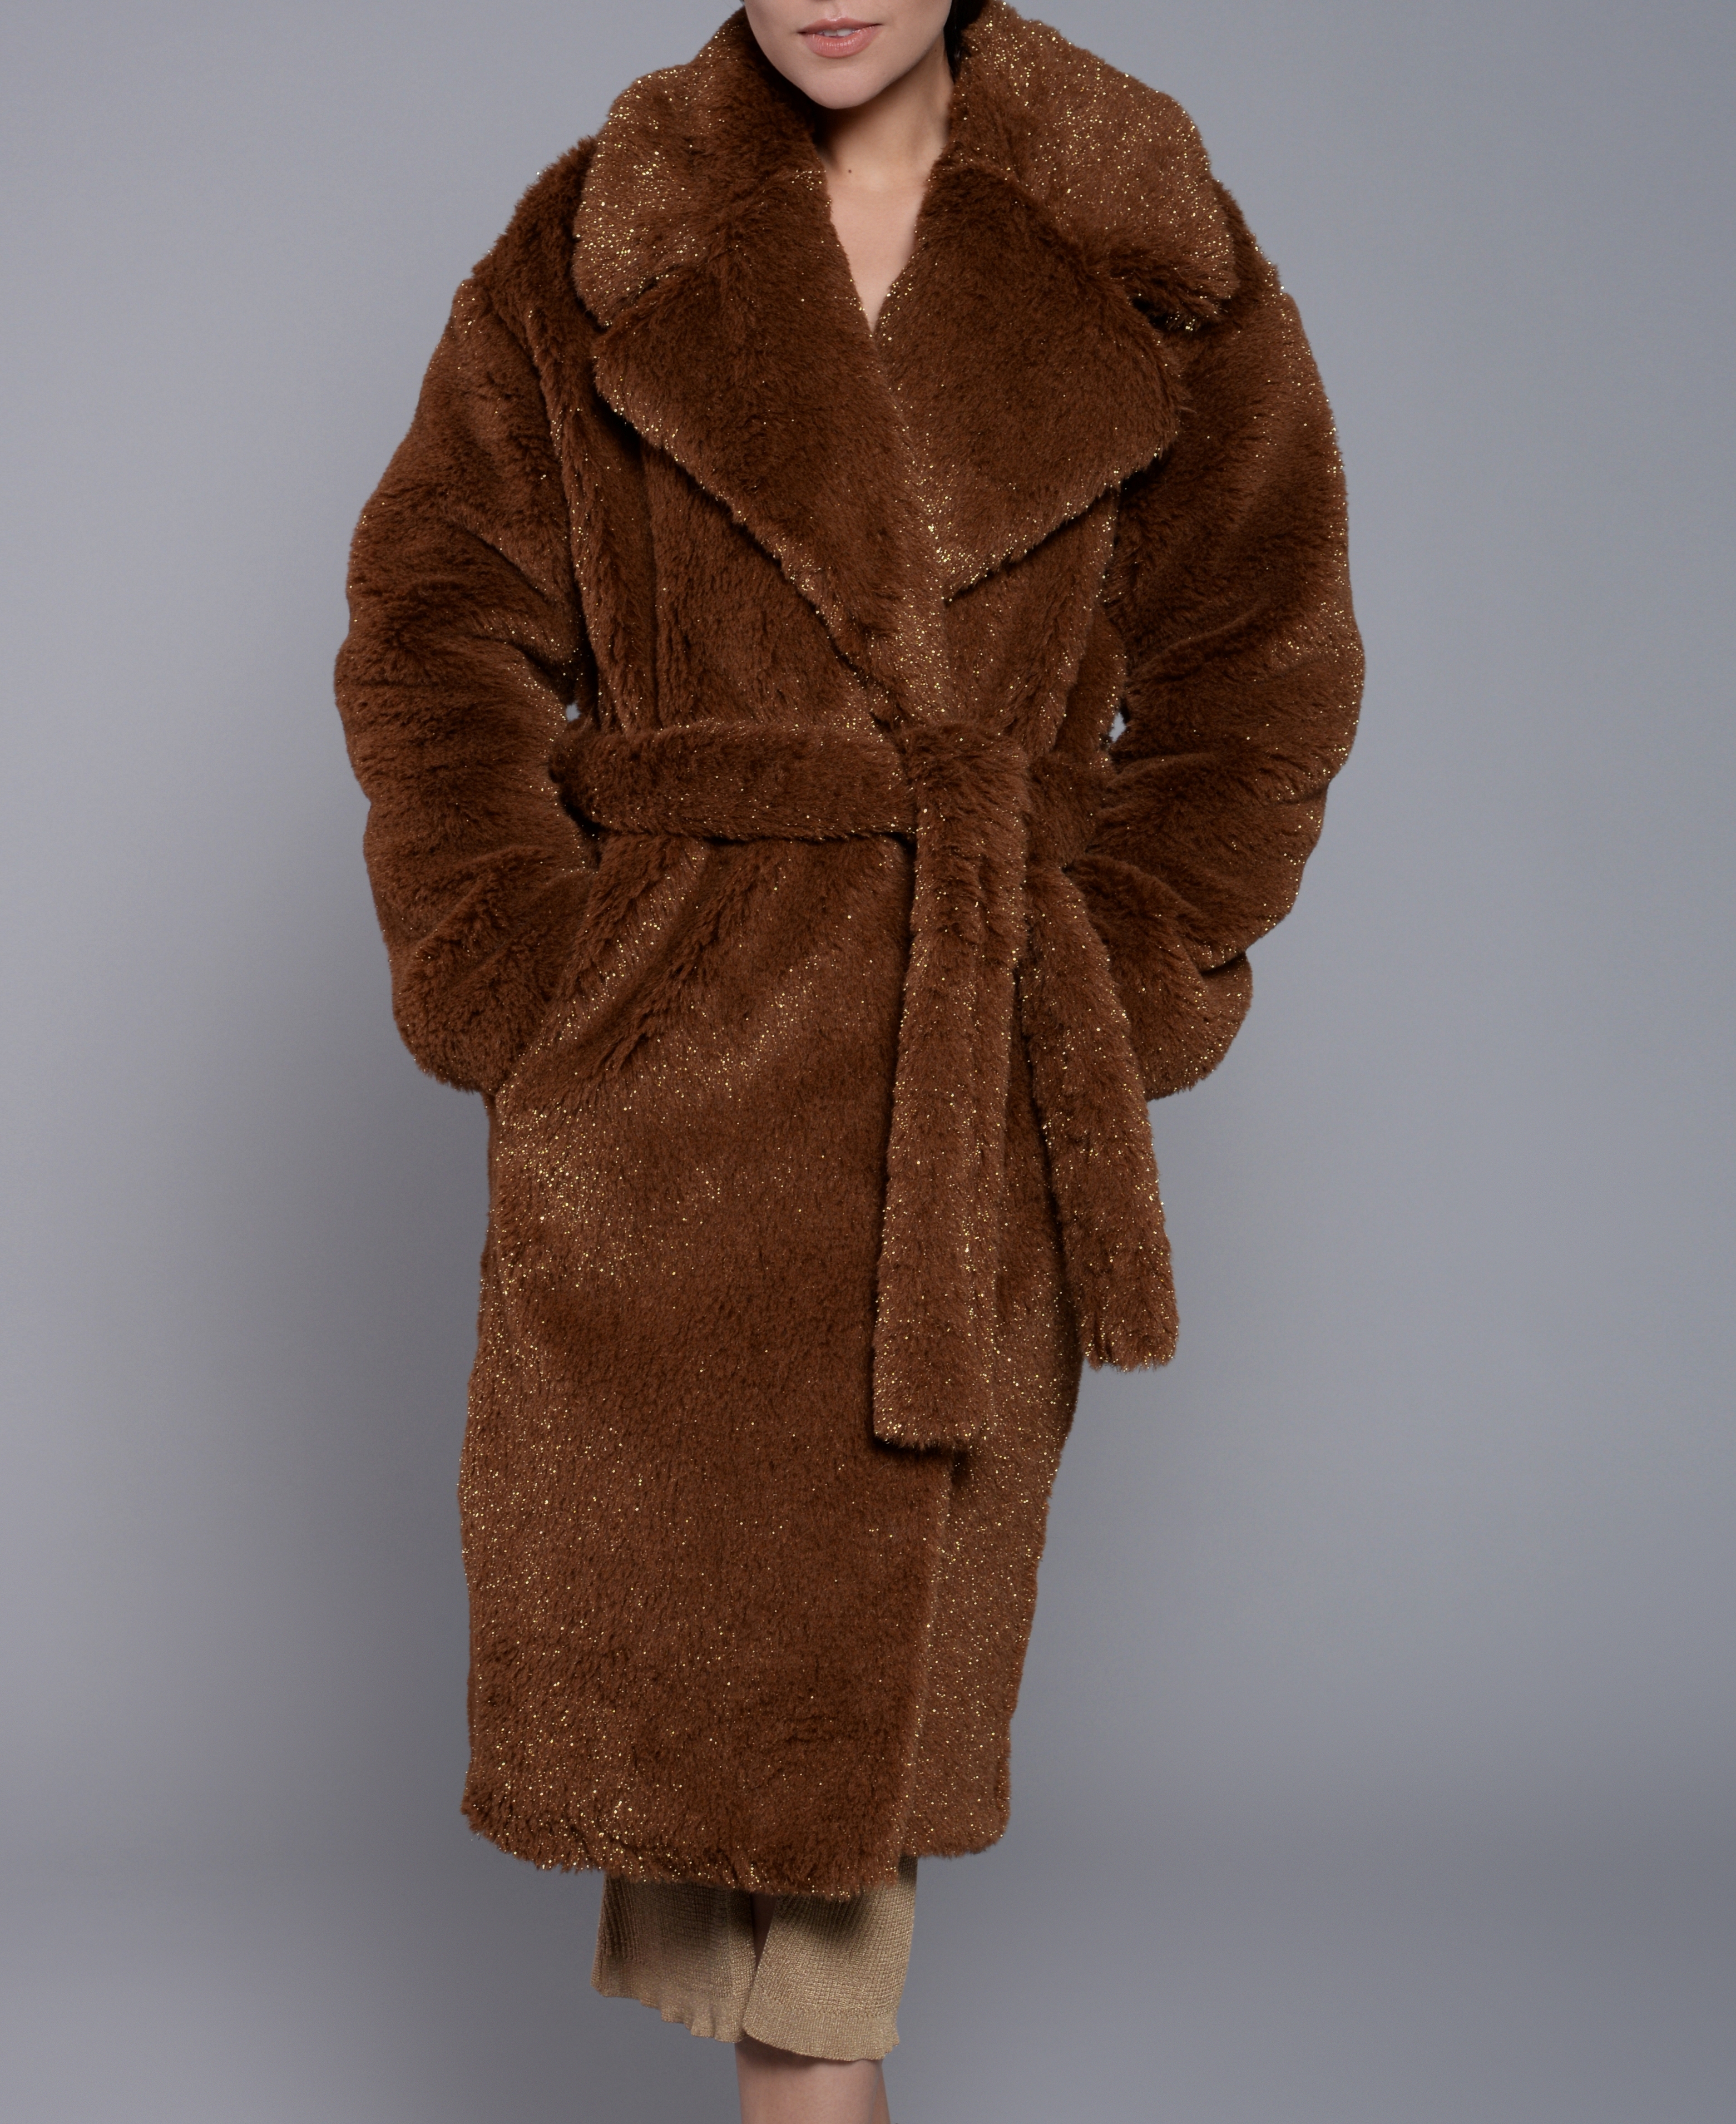 Пальто меховое из стриженной шерсти альпаки коричневое с люрексом в магазине «TRUEMOSSY» на Ламбада-маркете